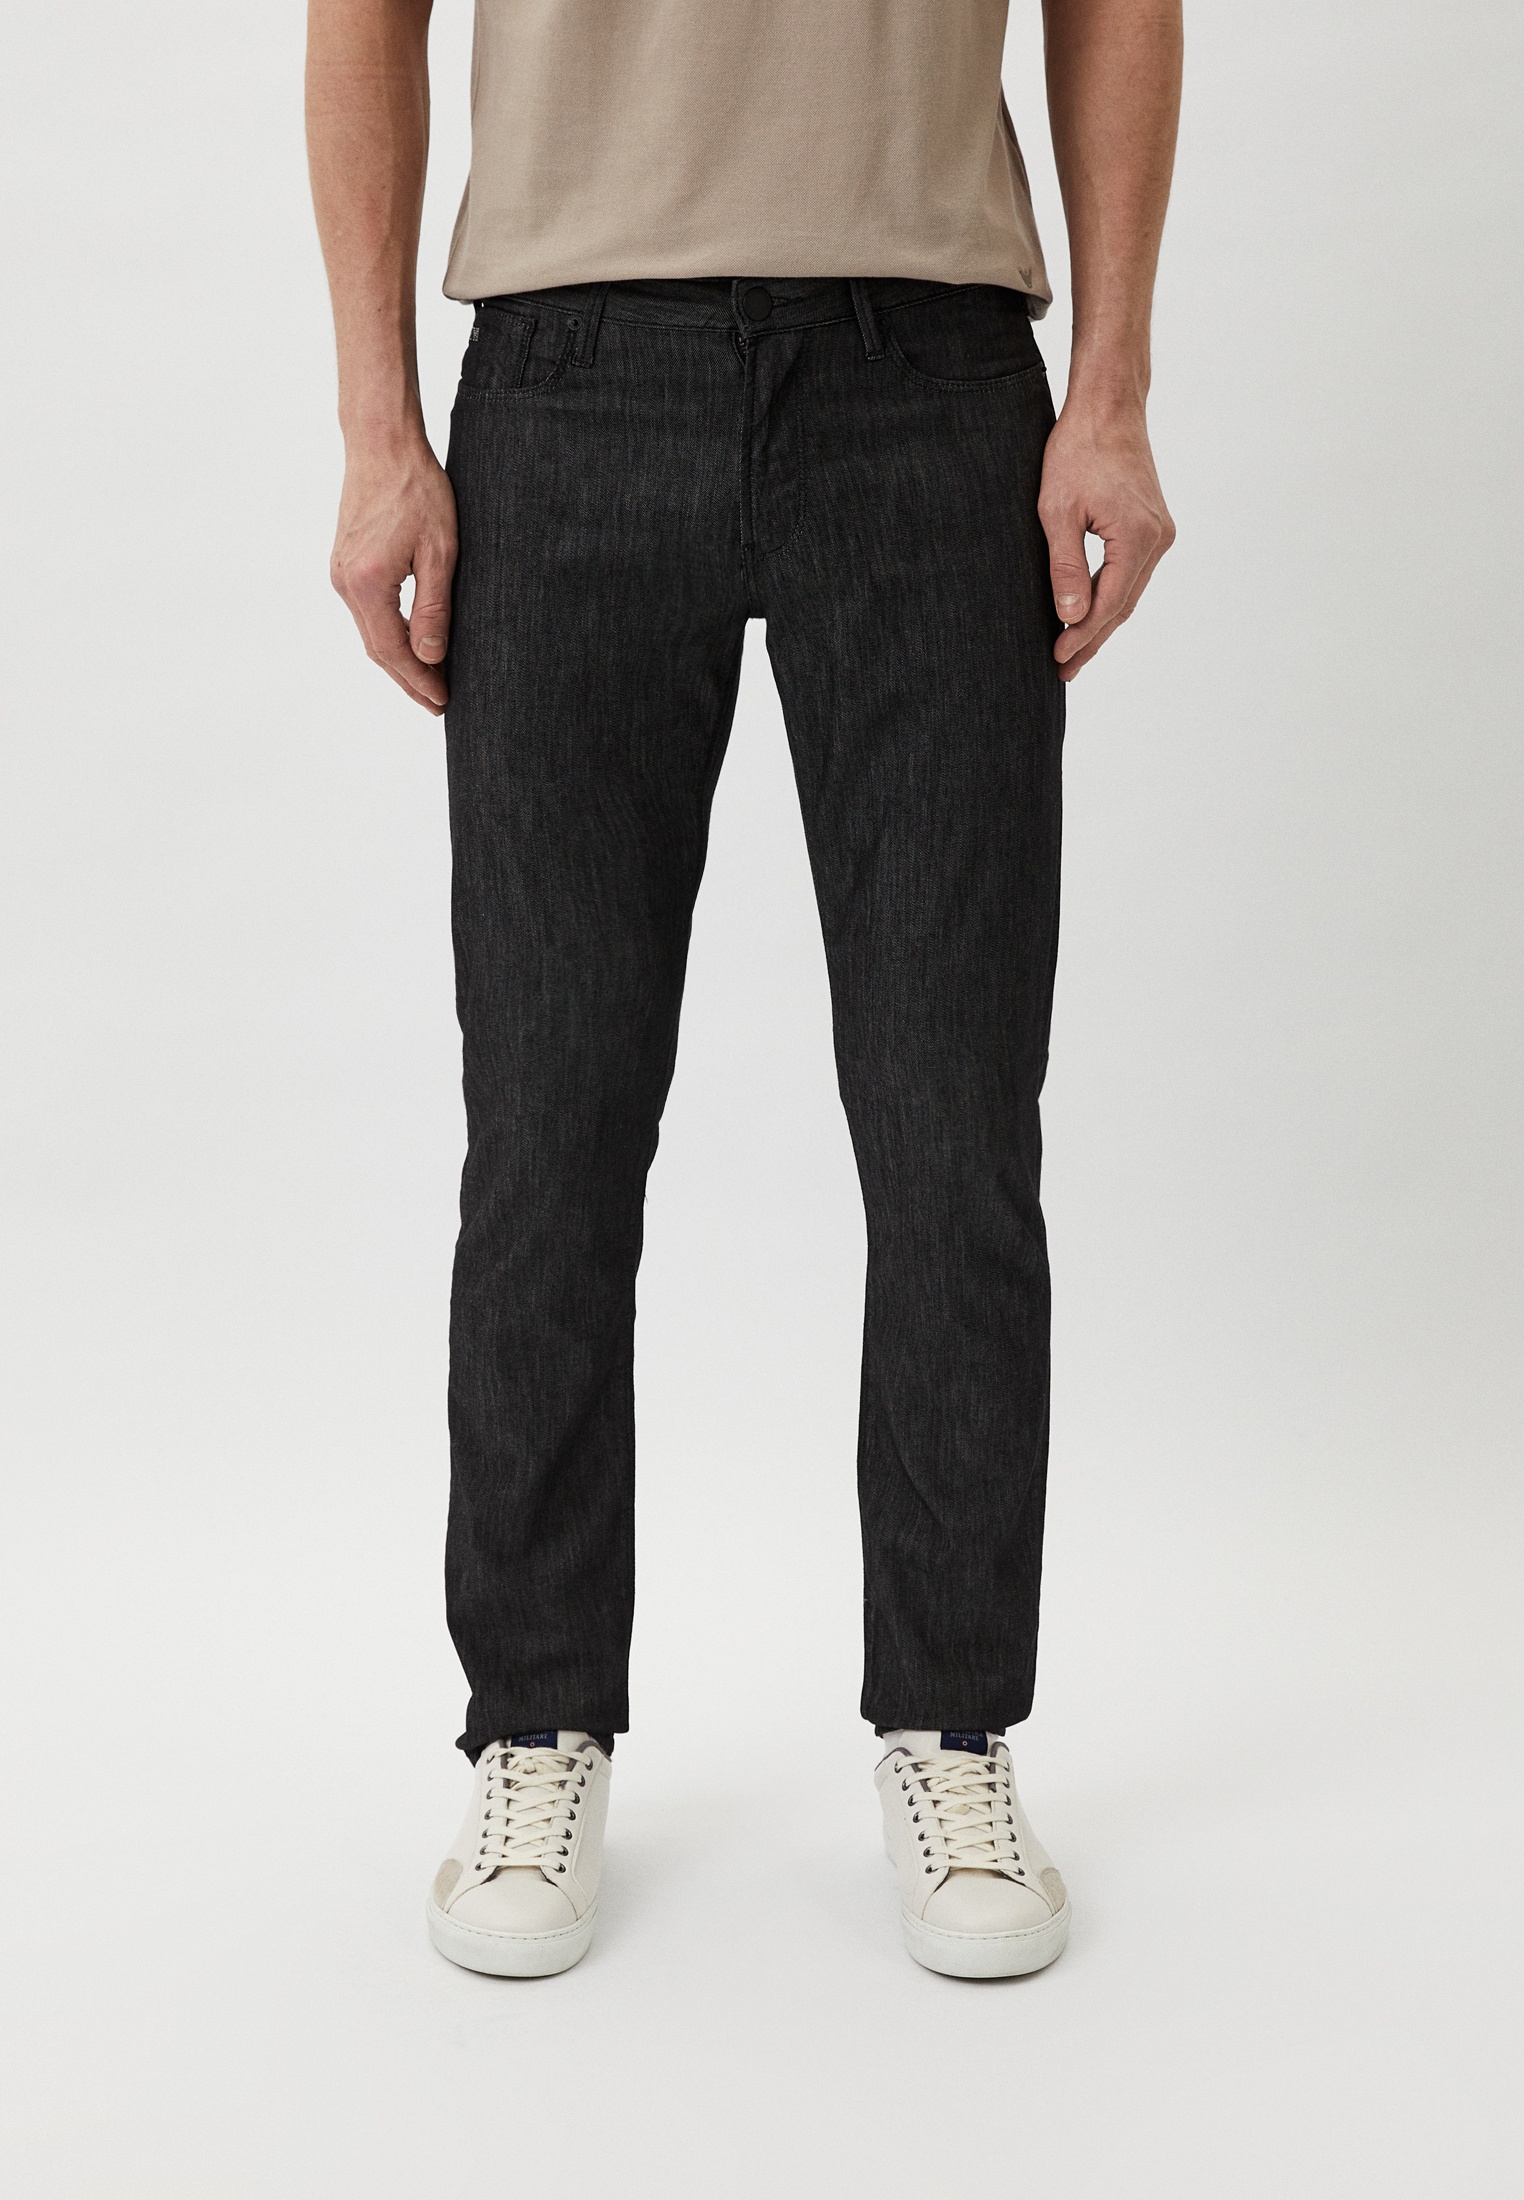 Мужские зауженные джинсы Emporio Armani (Эмпорио Армани) 8N1J06 1D85Z: изображение 1